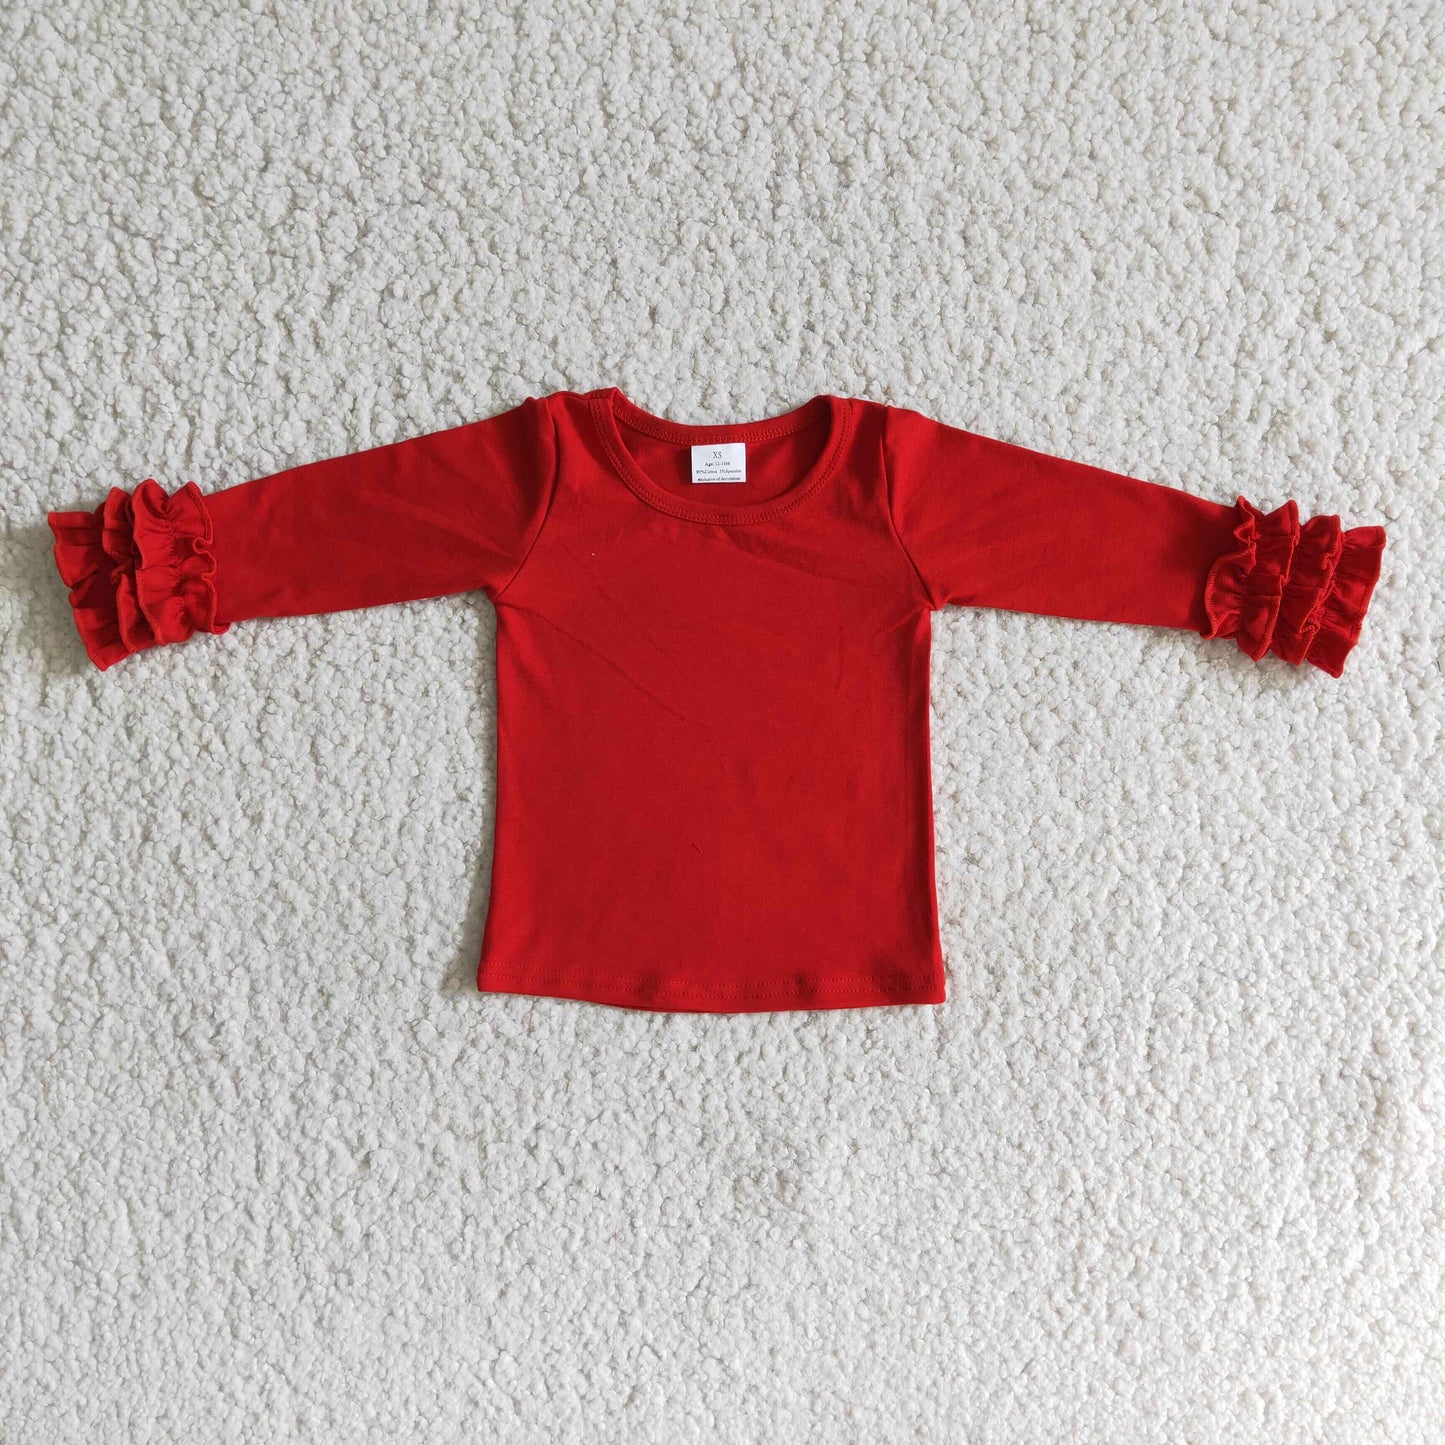 Red cotton icing ruffle top girls shirt